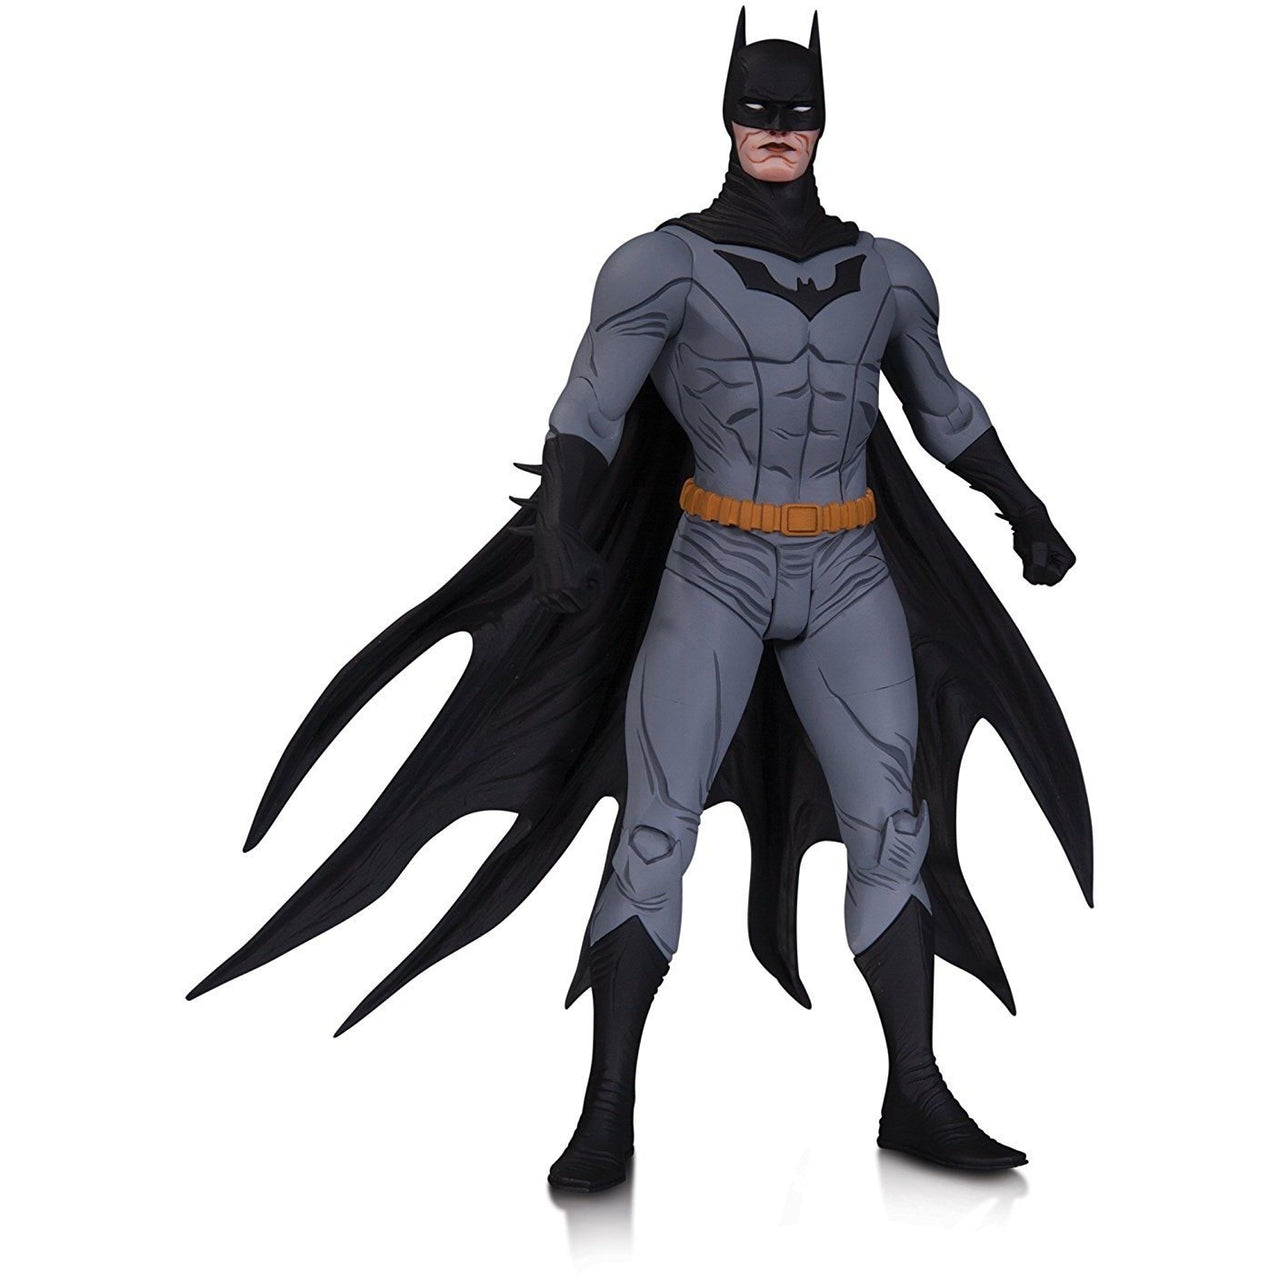 DC Collectibles Designer Series 1 Jae Lee: Batman Action Figure - Nerd Arena